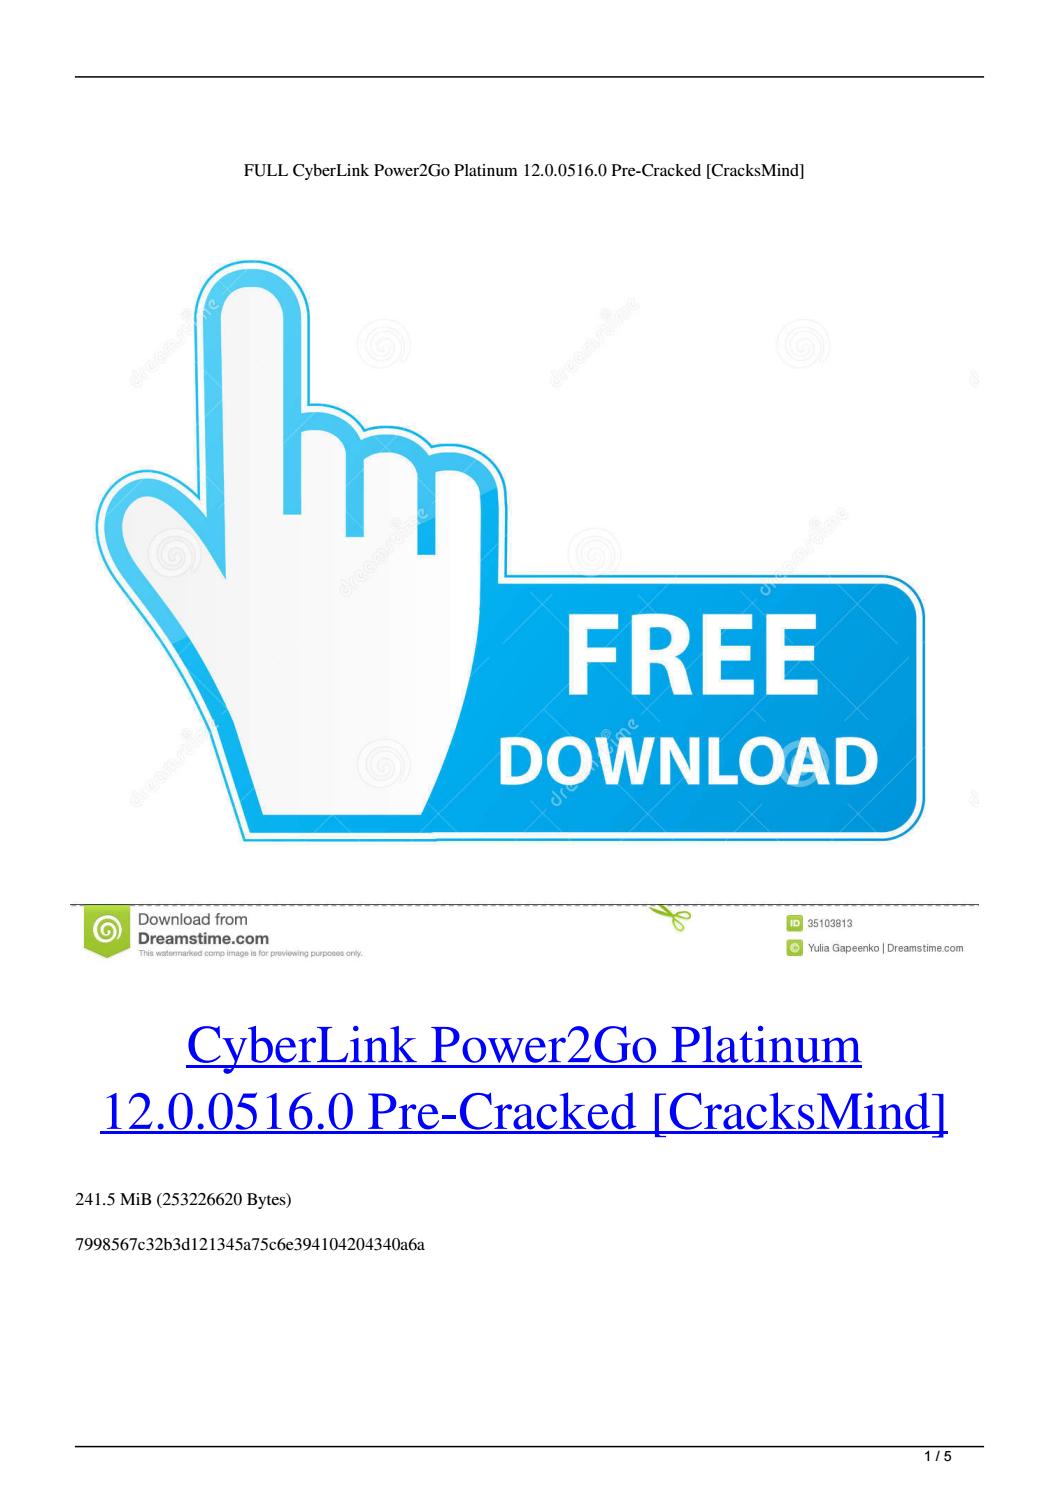 Cyberlink power2go 9 download torrent